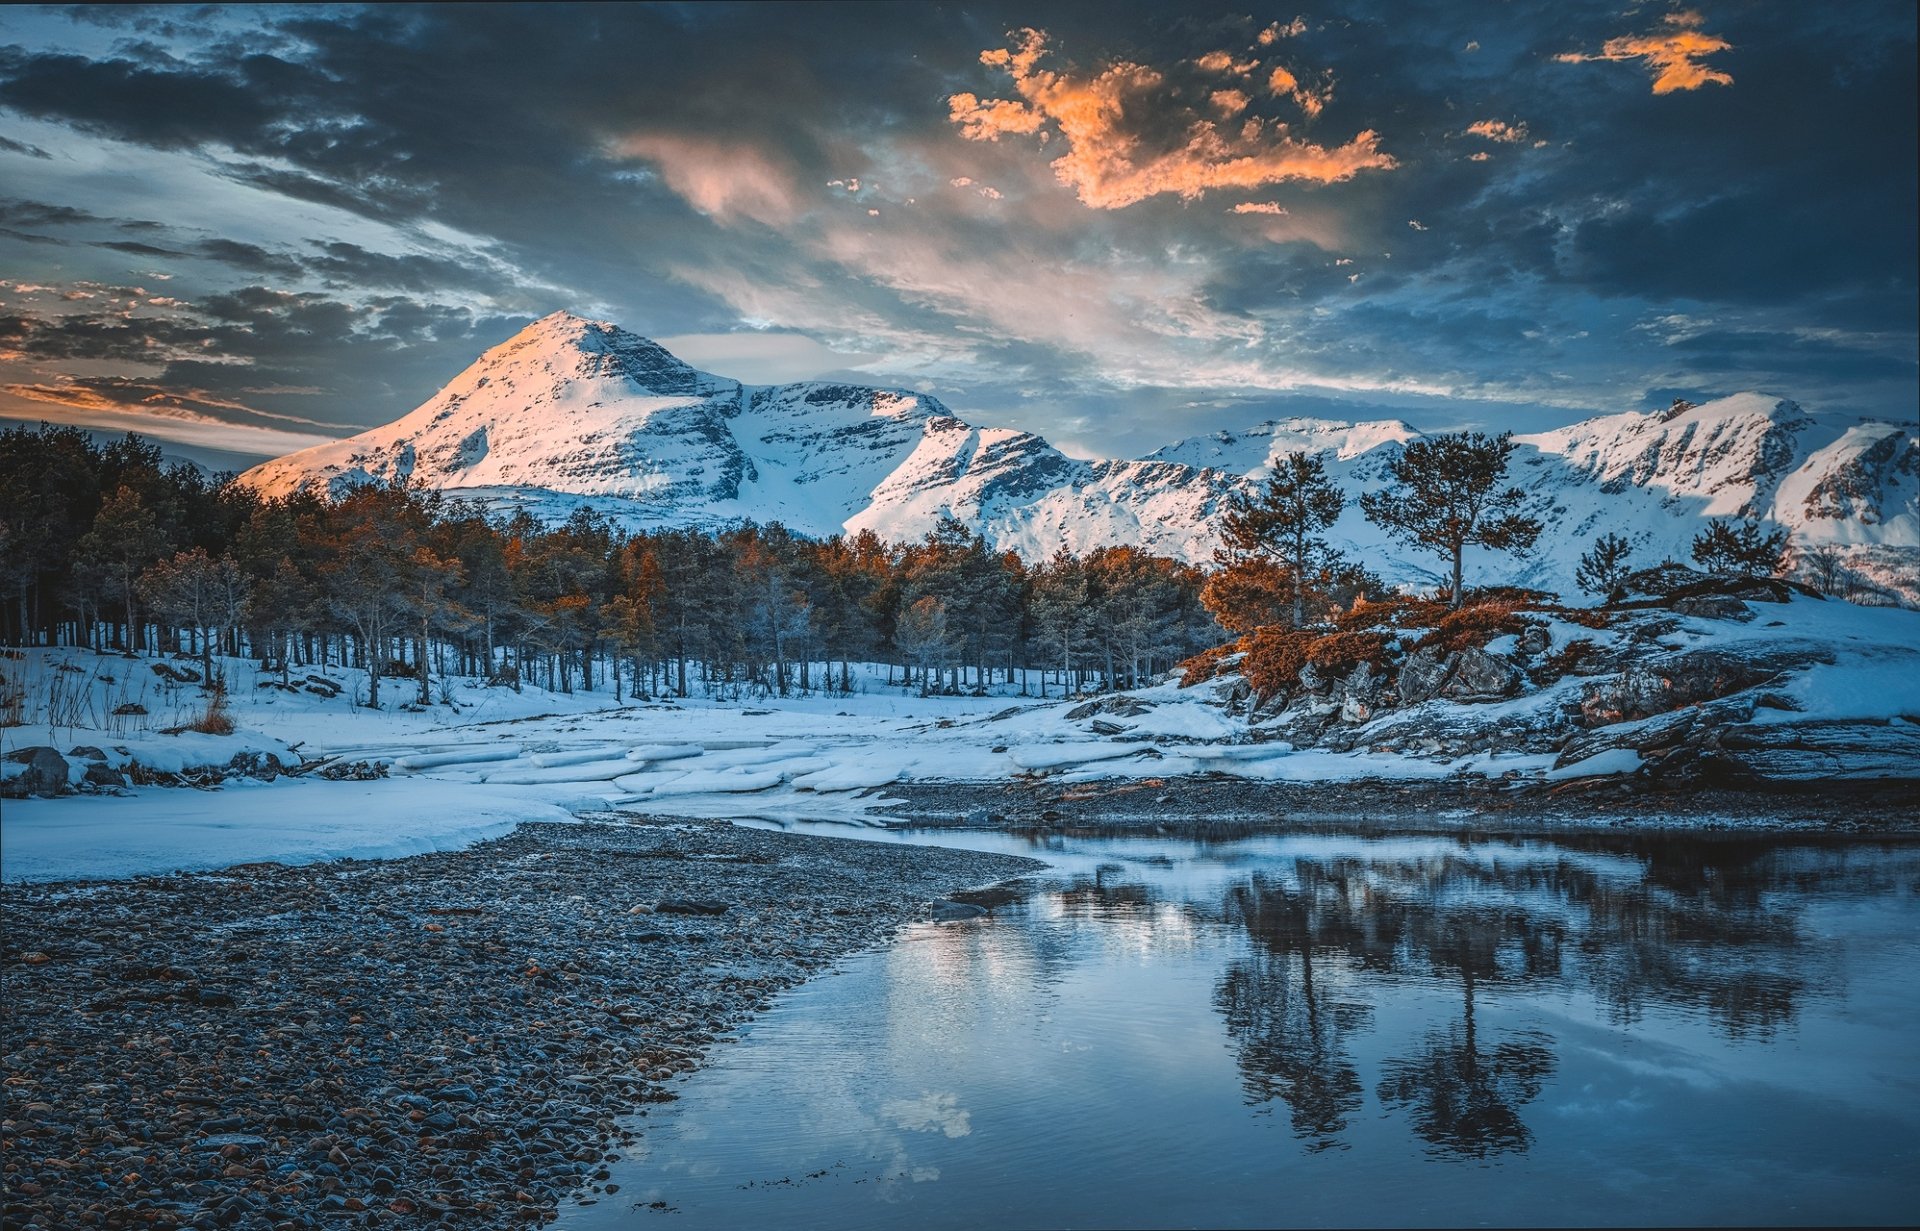 Early winter mountain snow landscape scene